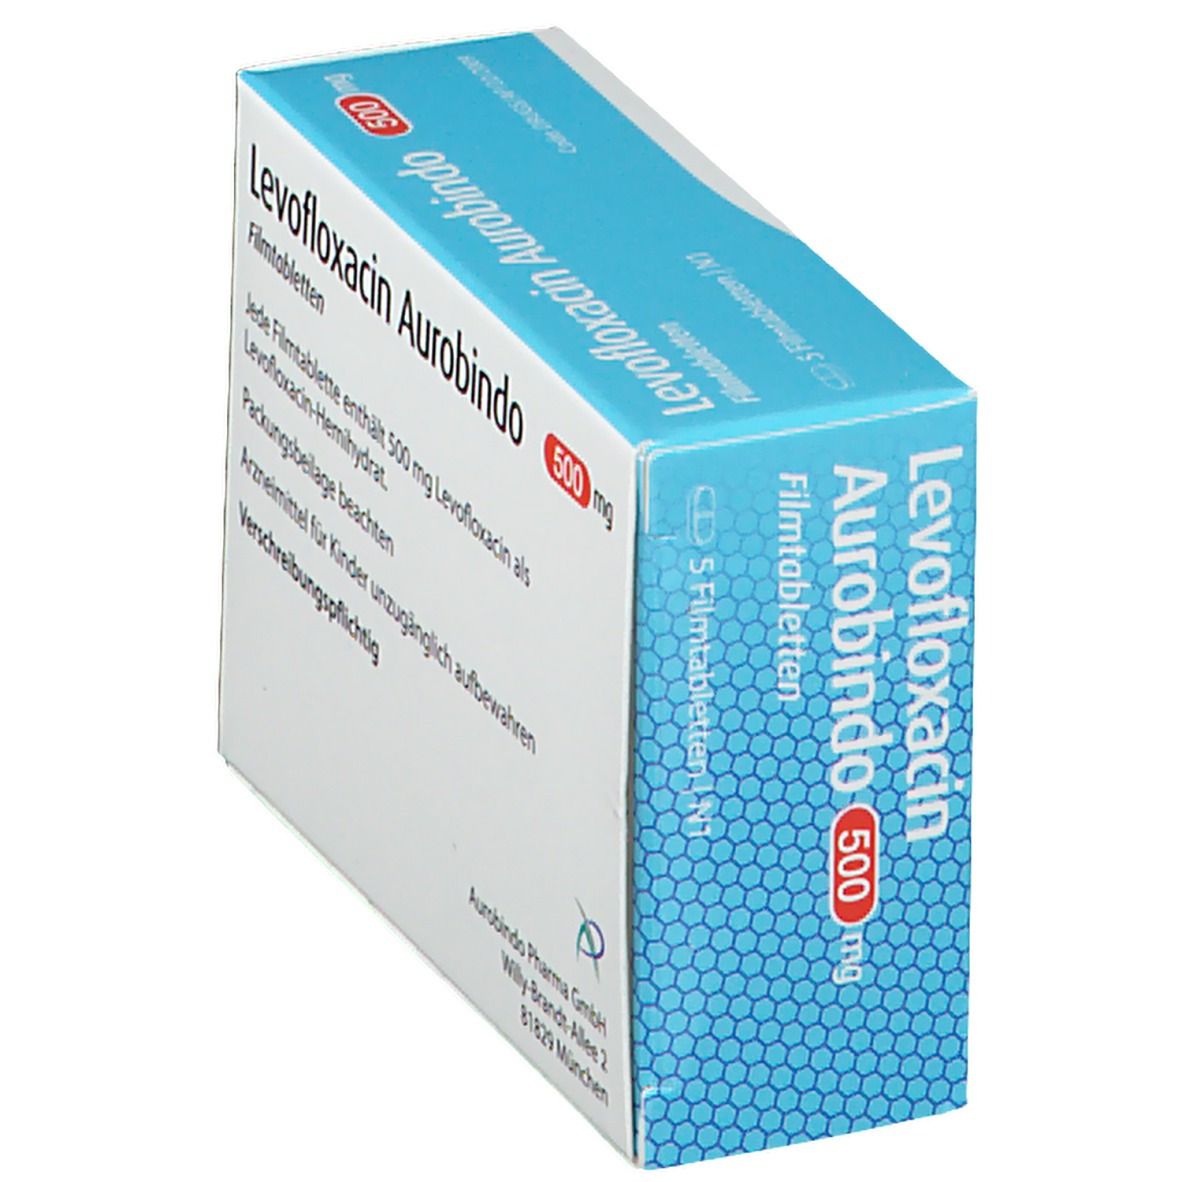 Levofloxacin Aurobindo 500 mg